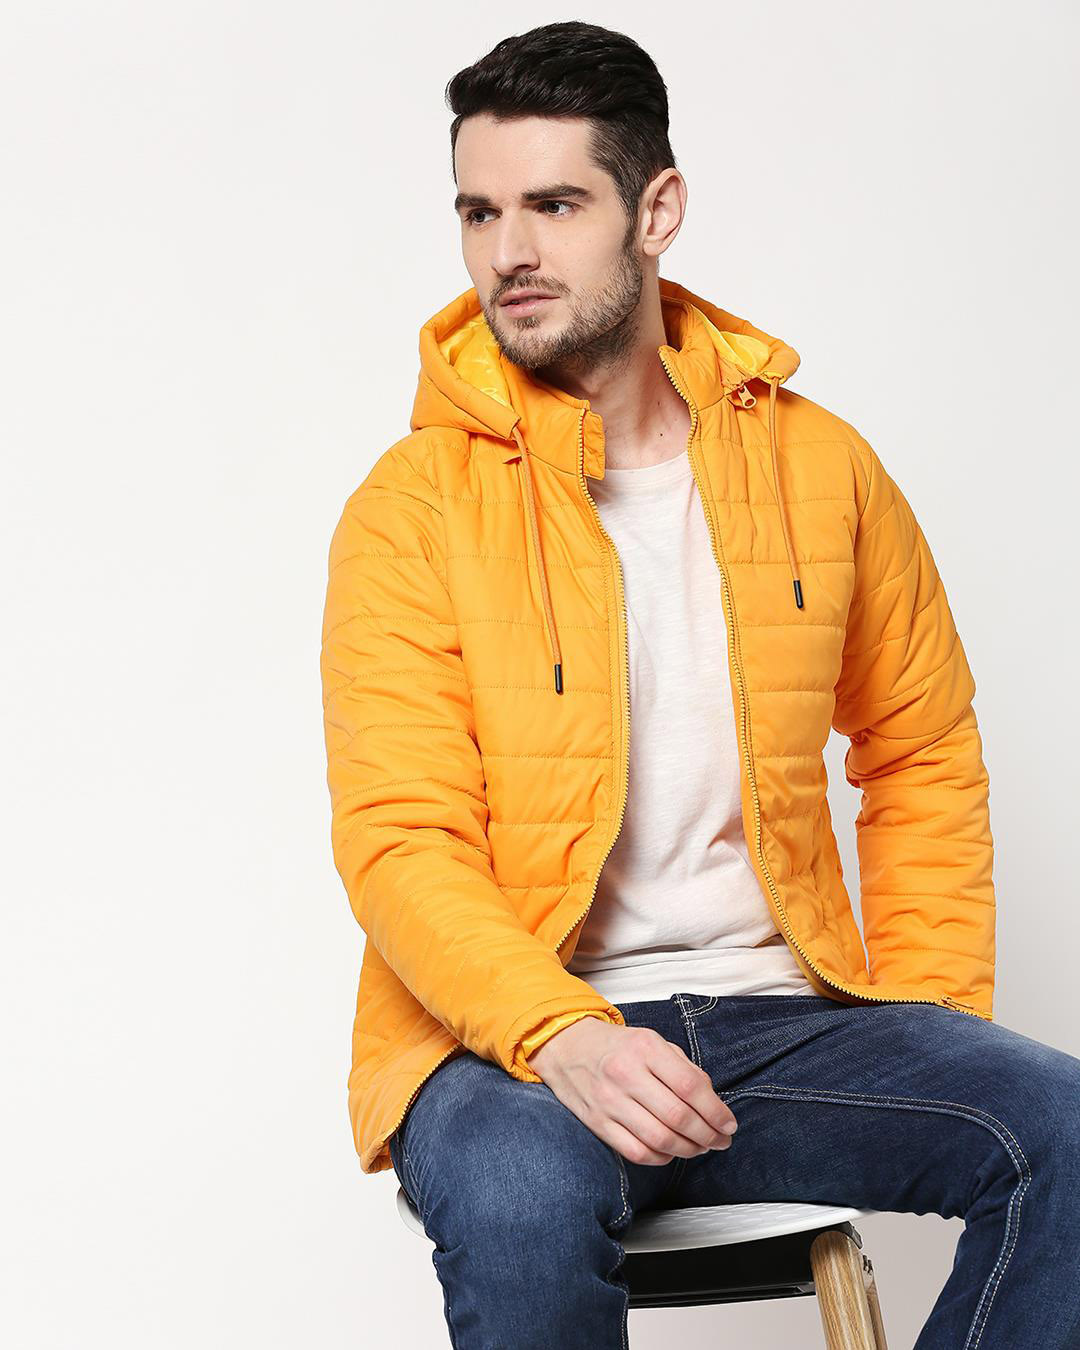 Buy Men's Yellow Puffer Jacket With Detachable Hood Online at Bewakoof